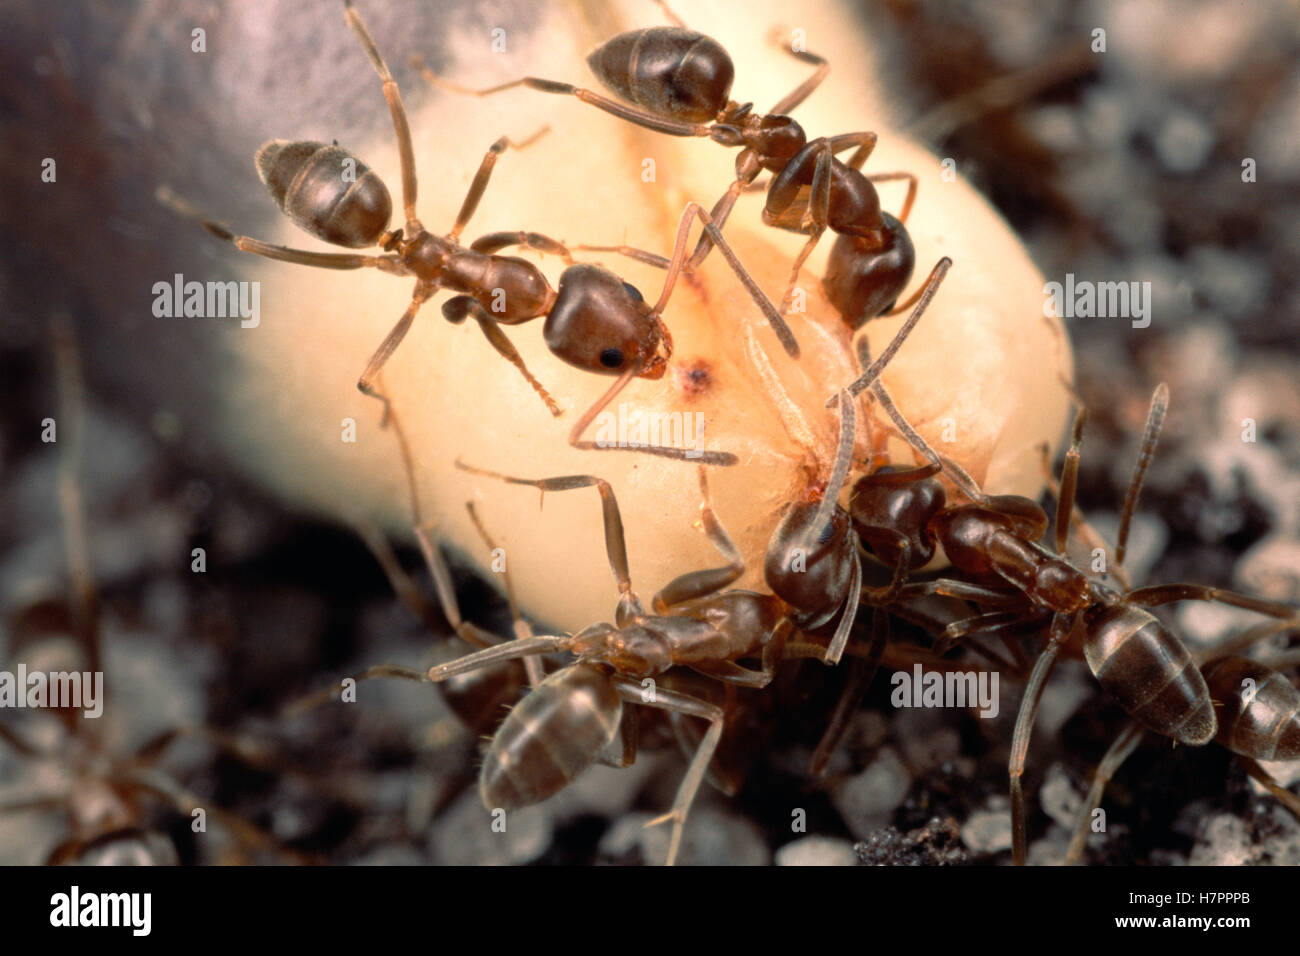 La Hormiga argentina (Linepithema humile) grupo de alimentación nutritiva eliasome suave en la punta de un arbusto fynbos y desechar las semillas Foto de stock